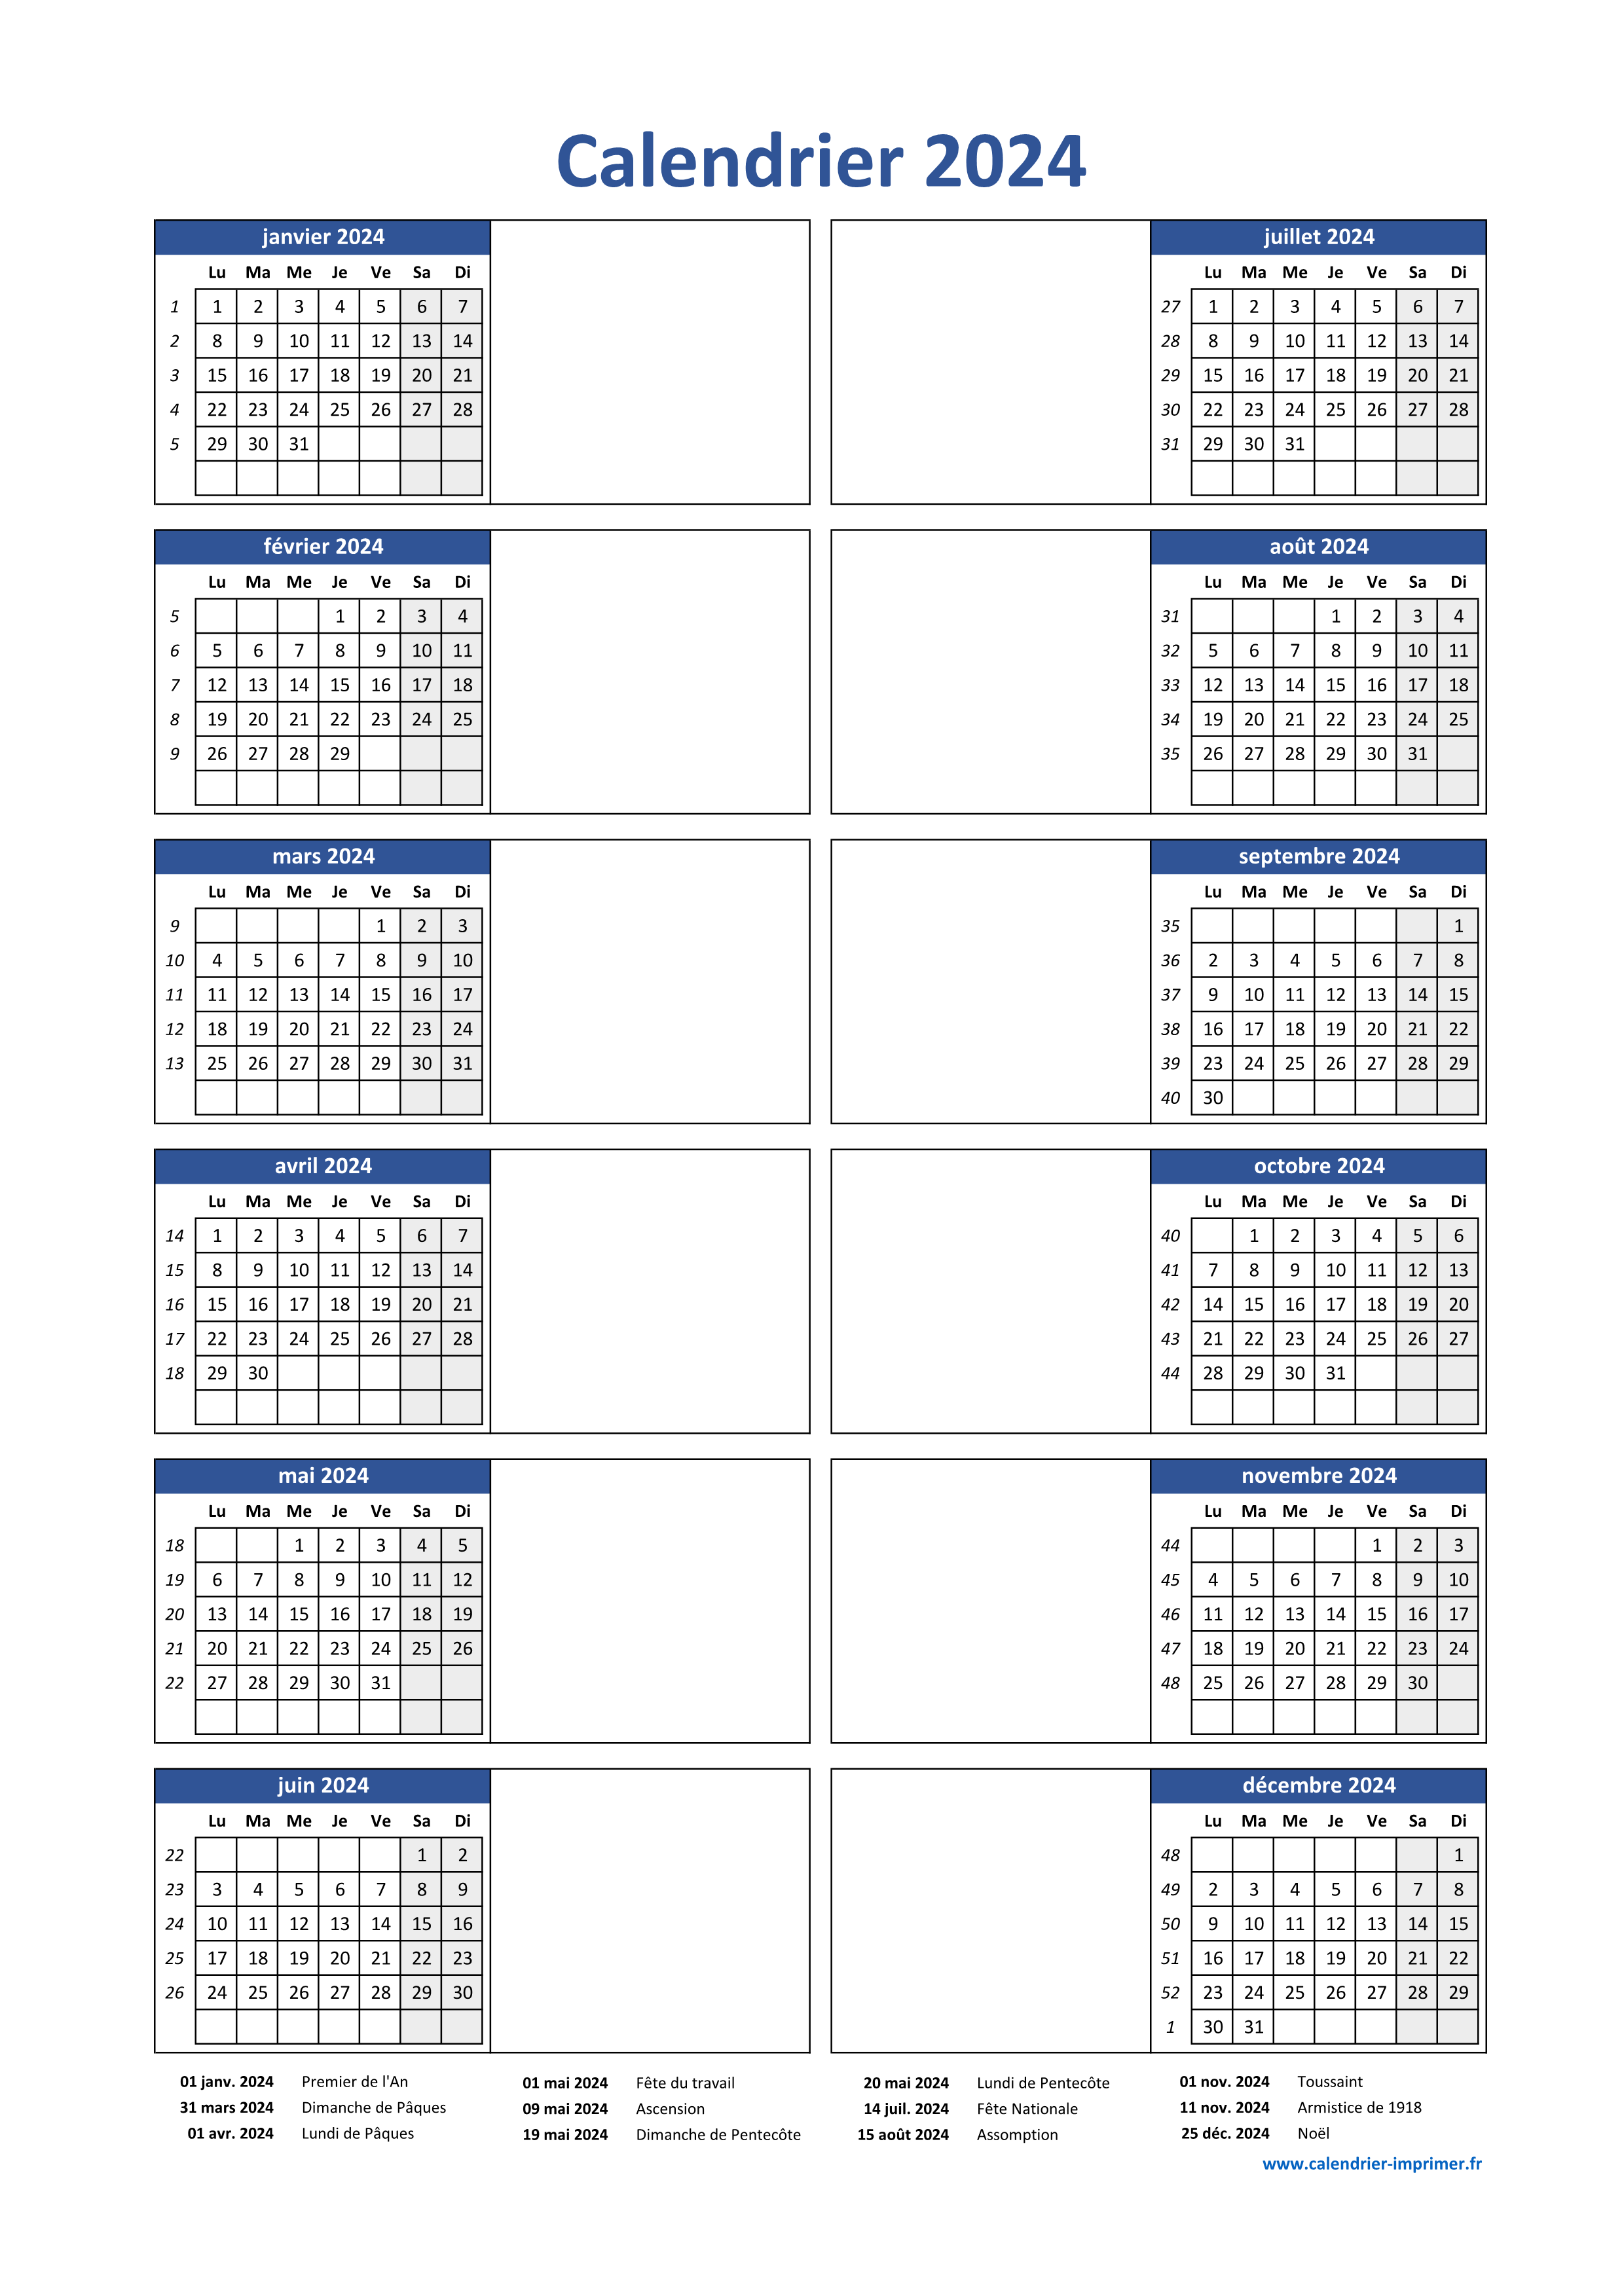 Calendrier 2024, calendrier annuel, agenda, calendrier, une page